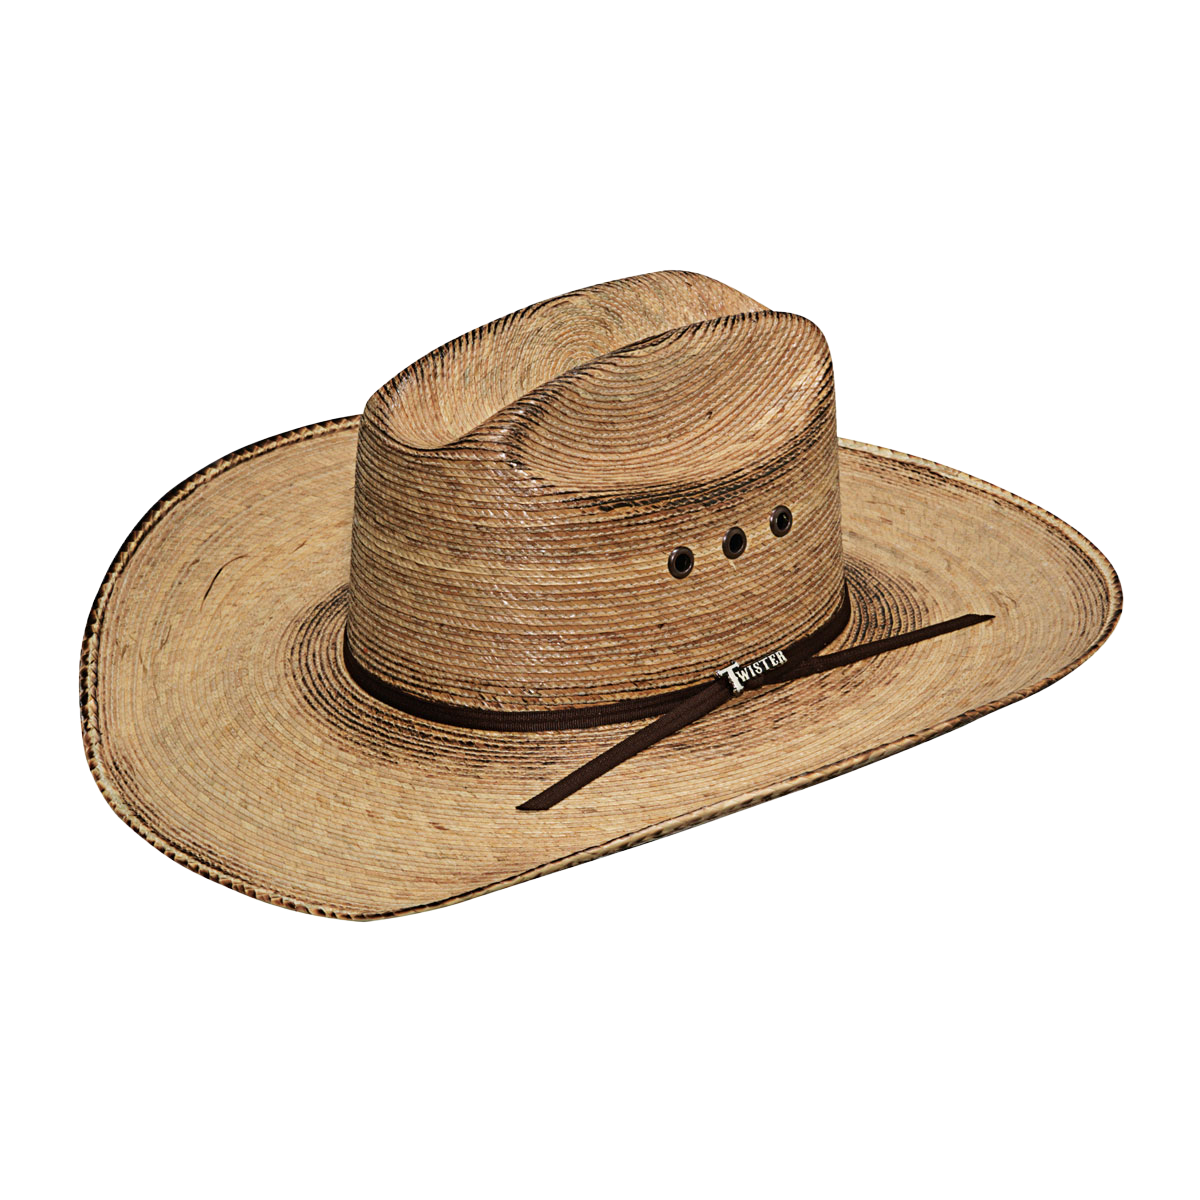 Twister Men's Fire Palm Straw Western Cowboy Hat T65210